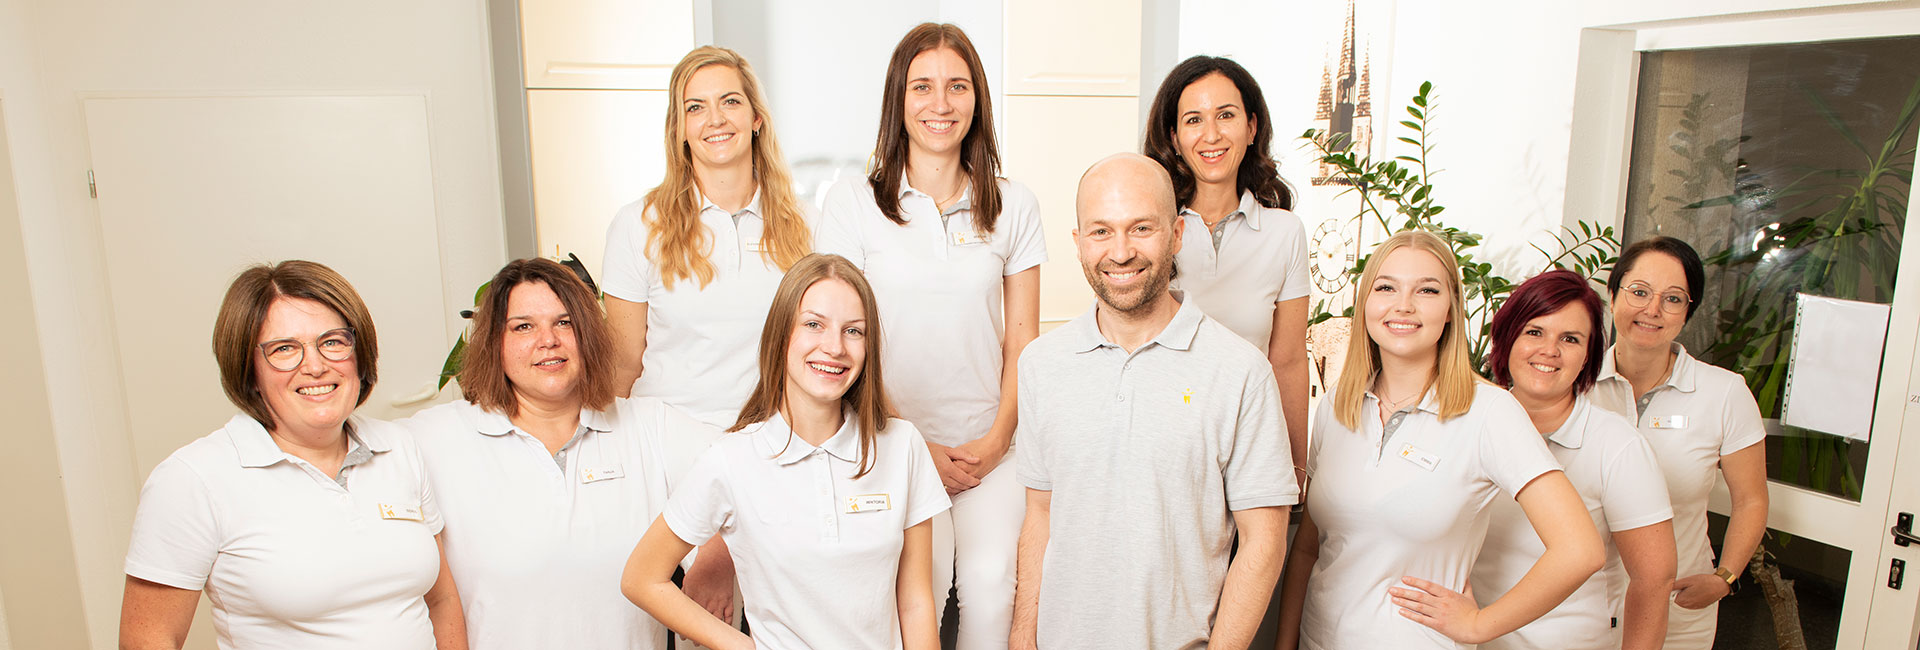 Das Team der Zahnarztpraxis Krinner in Straubing